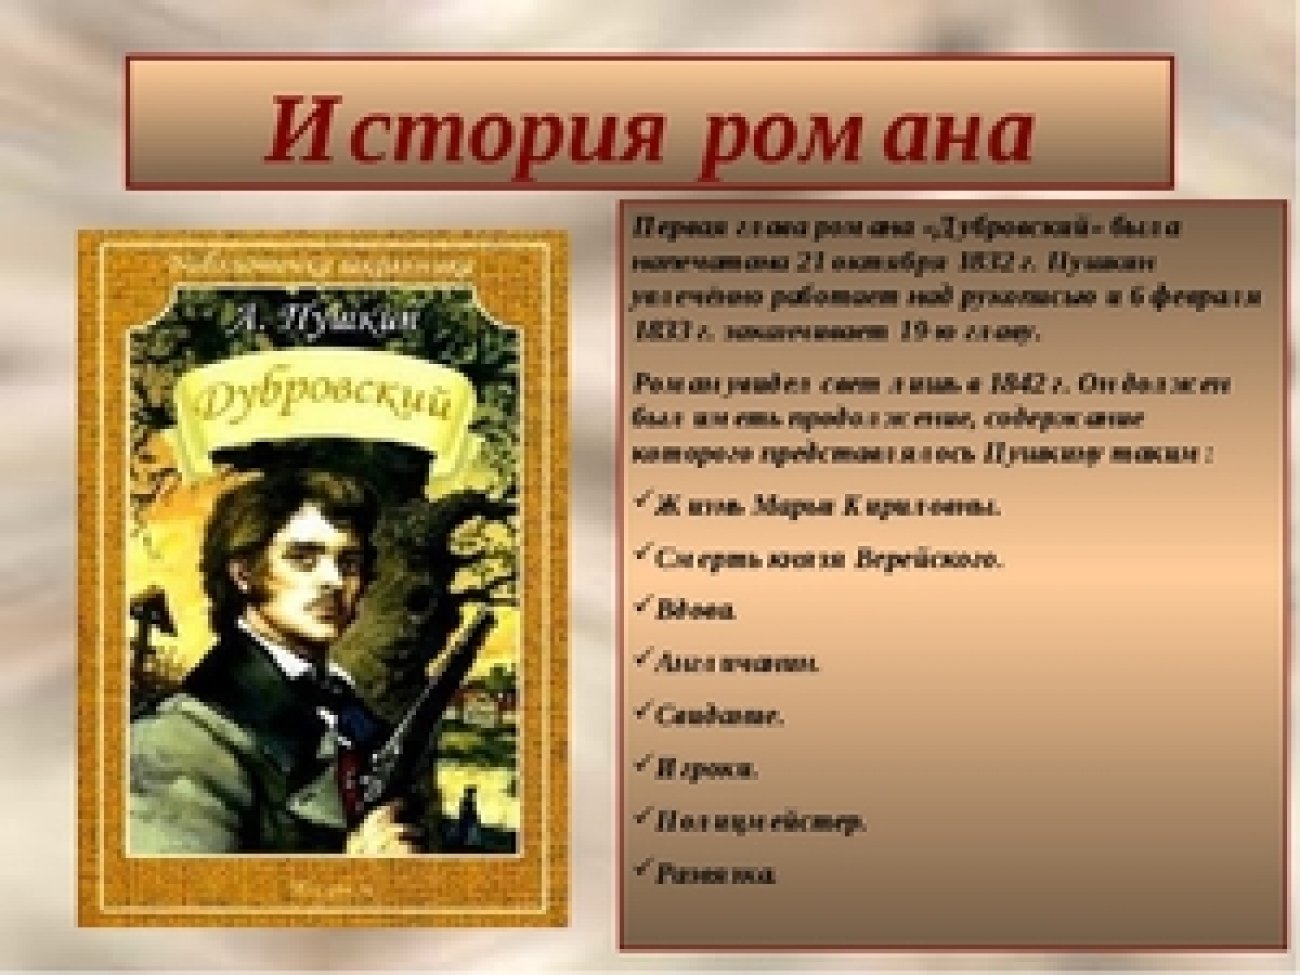 Рассказ это произведение характера. 190 Лет Дубровский 1832 1833 а с Пушкин. Произведение Пушкина Дубровский.